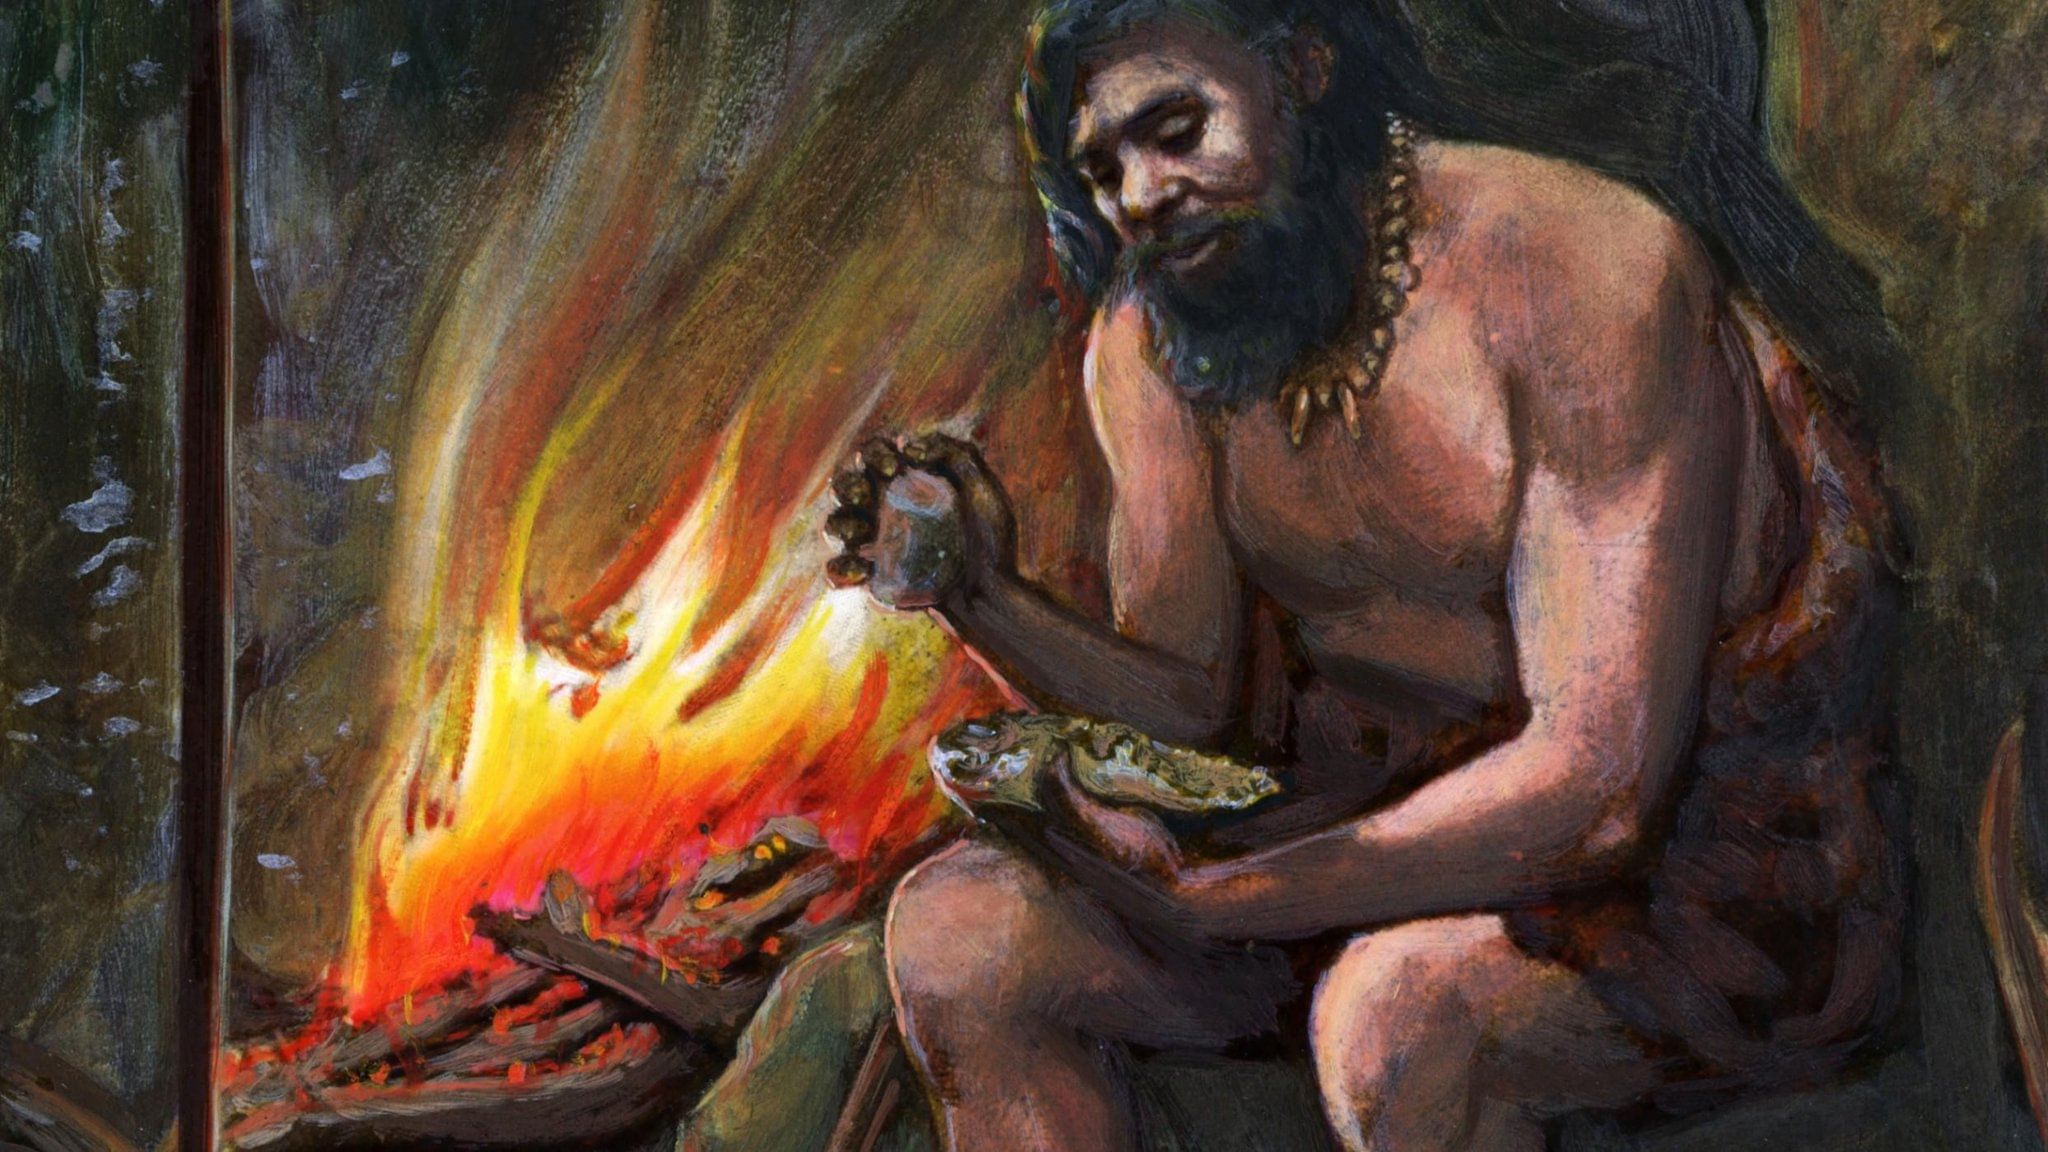 Мужчина в древние времена. Неандертальцы и кроманьонцы у огня. Неандерталец добывает огонь. Человек добывает огонь. Первобытные люди добывают огонь.